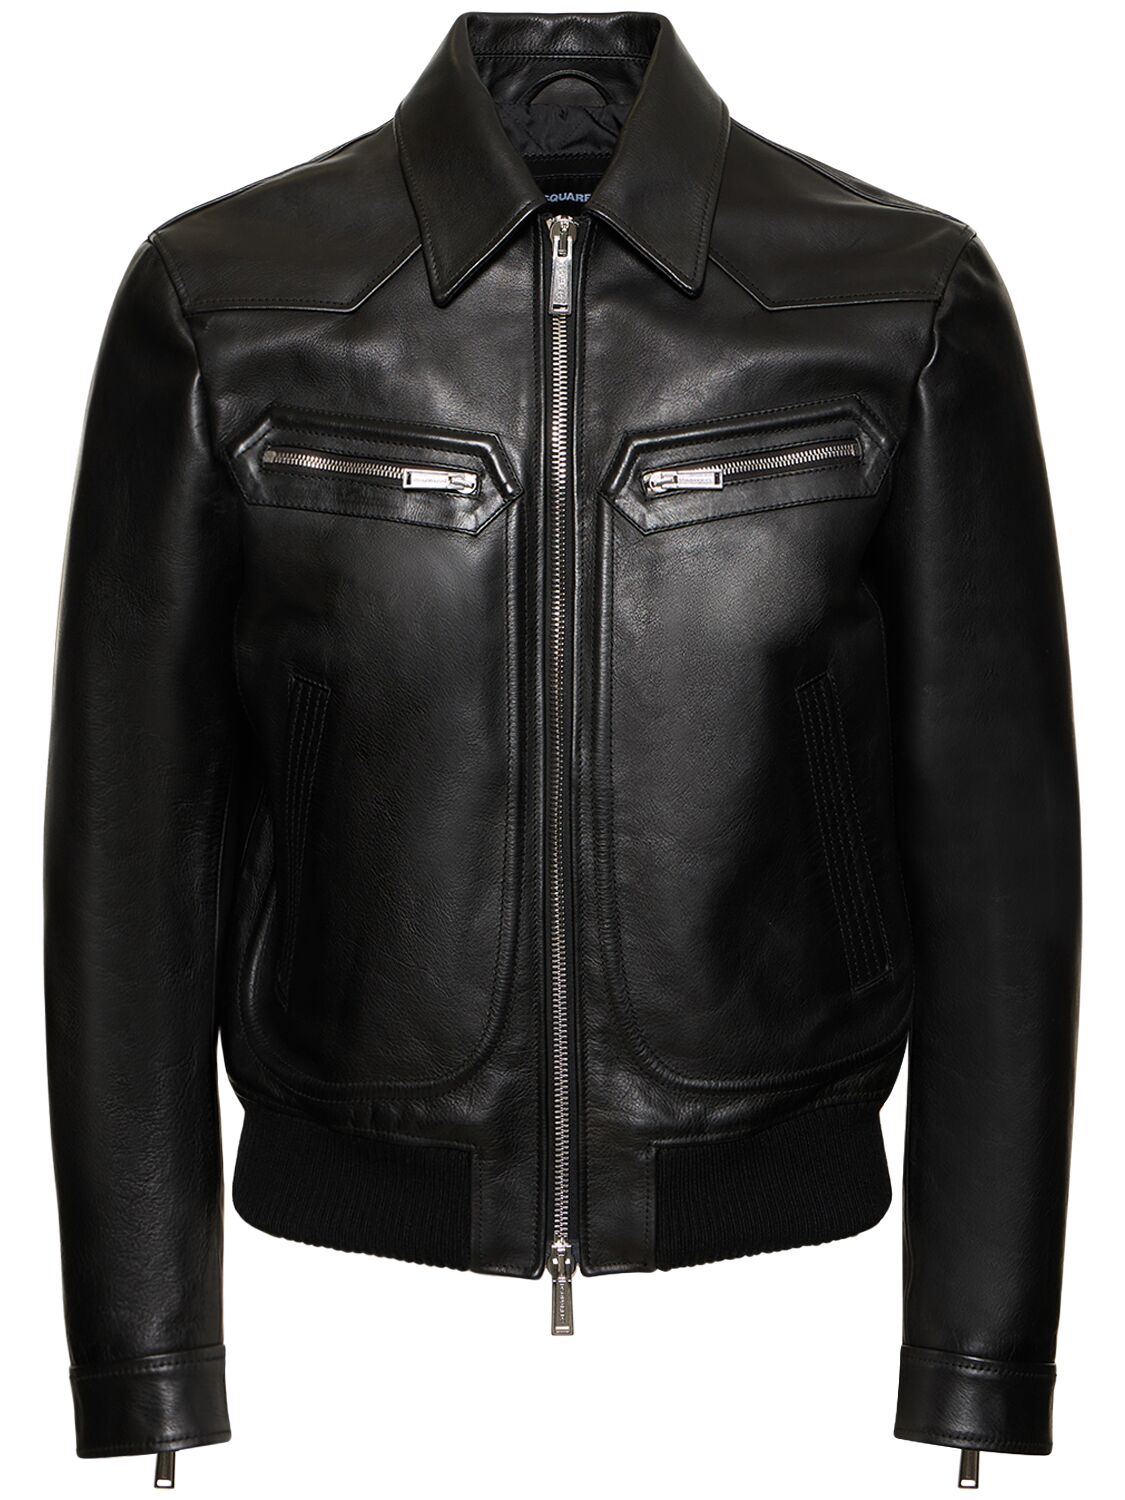 Vintage-style Leather Jacket – MEN > CLOTHING > JACKETS